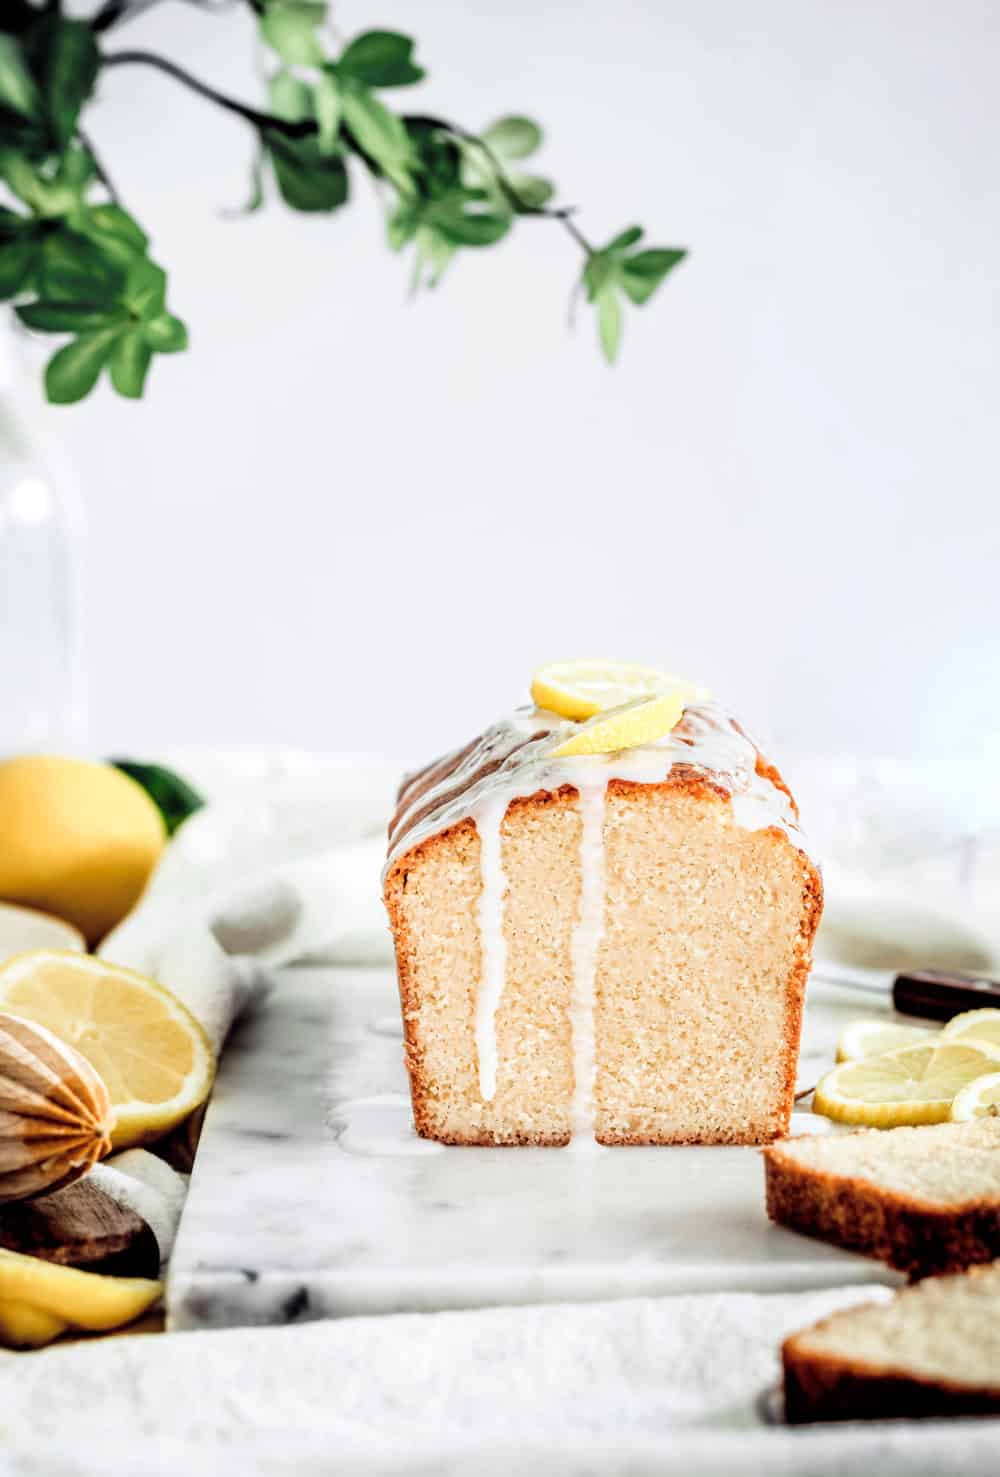 Meilleure recette du cake au citron